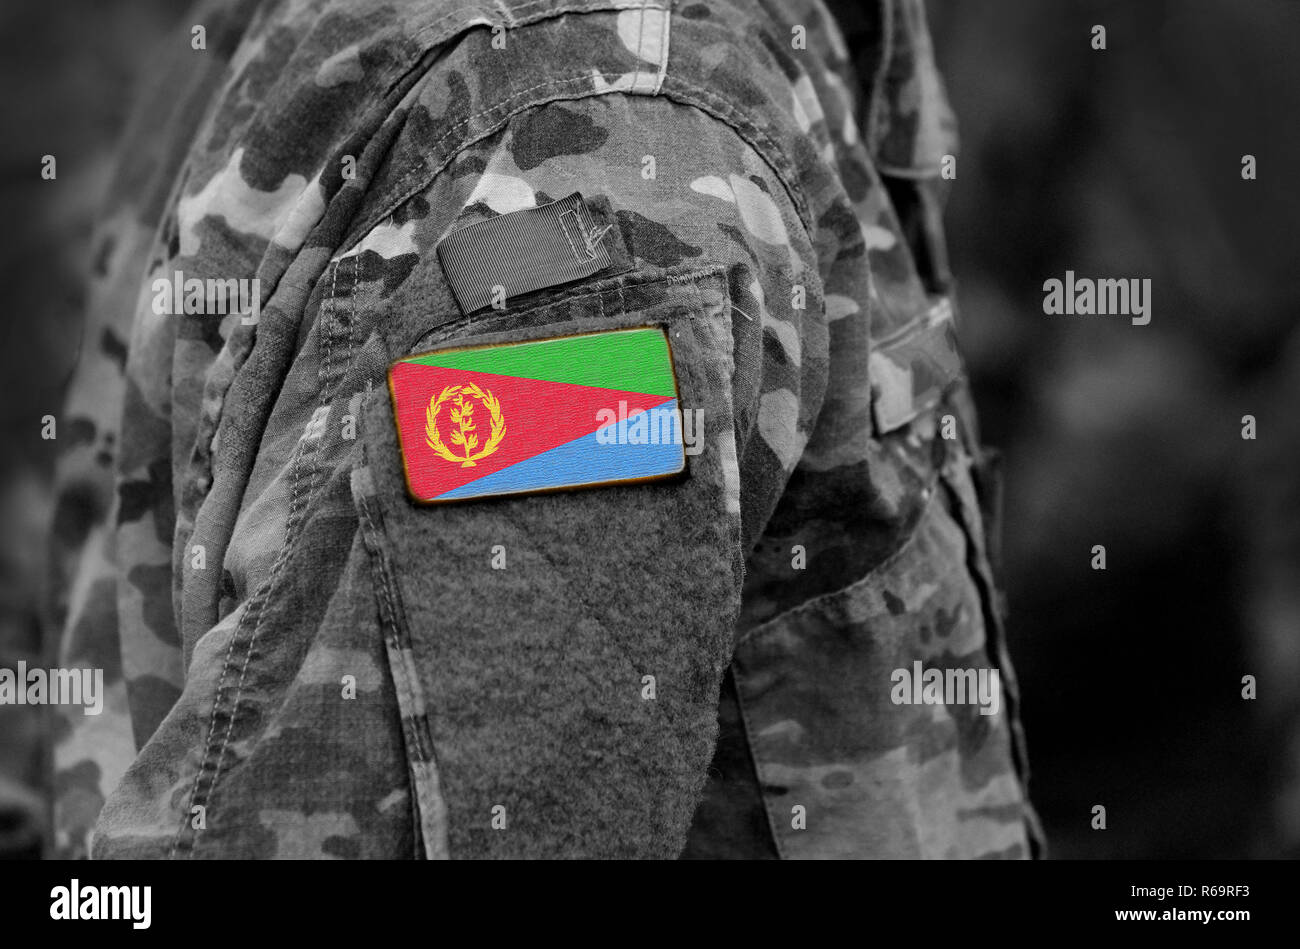 Bandera de Eritrea contra soldados del brazo. Ejército, tropas, militares, África (collage). Foto de stock